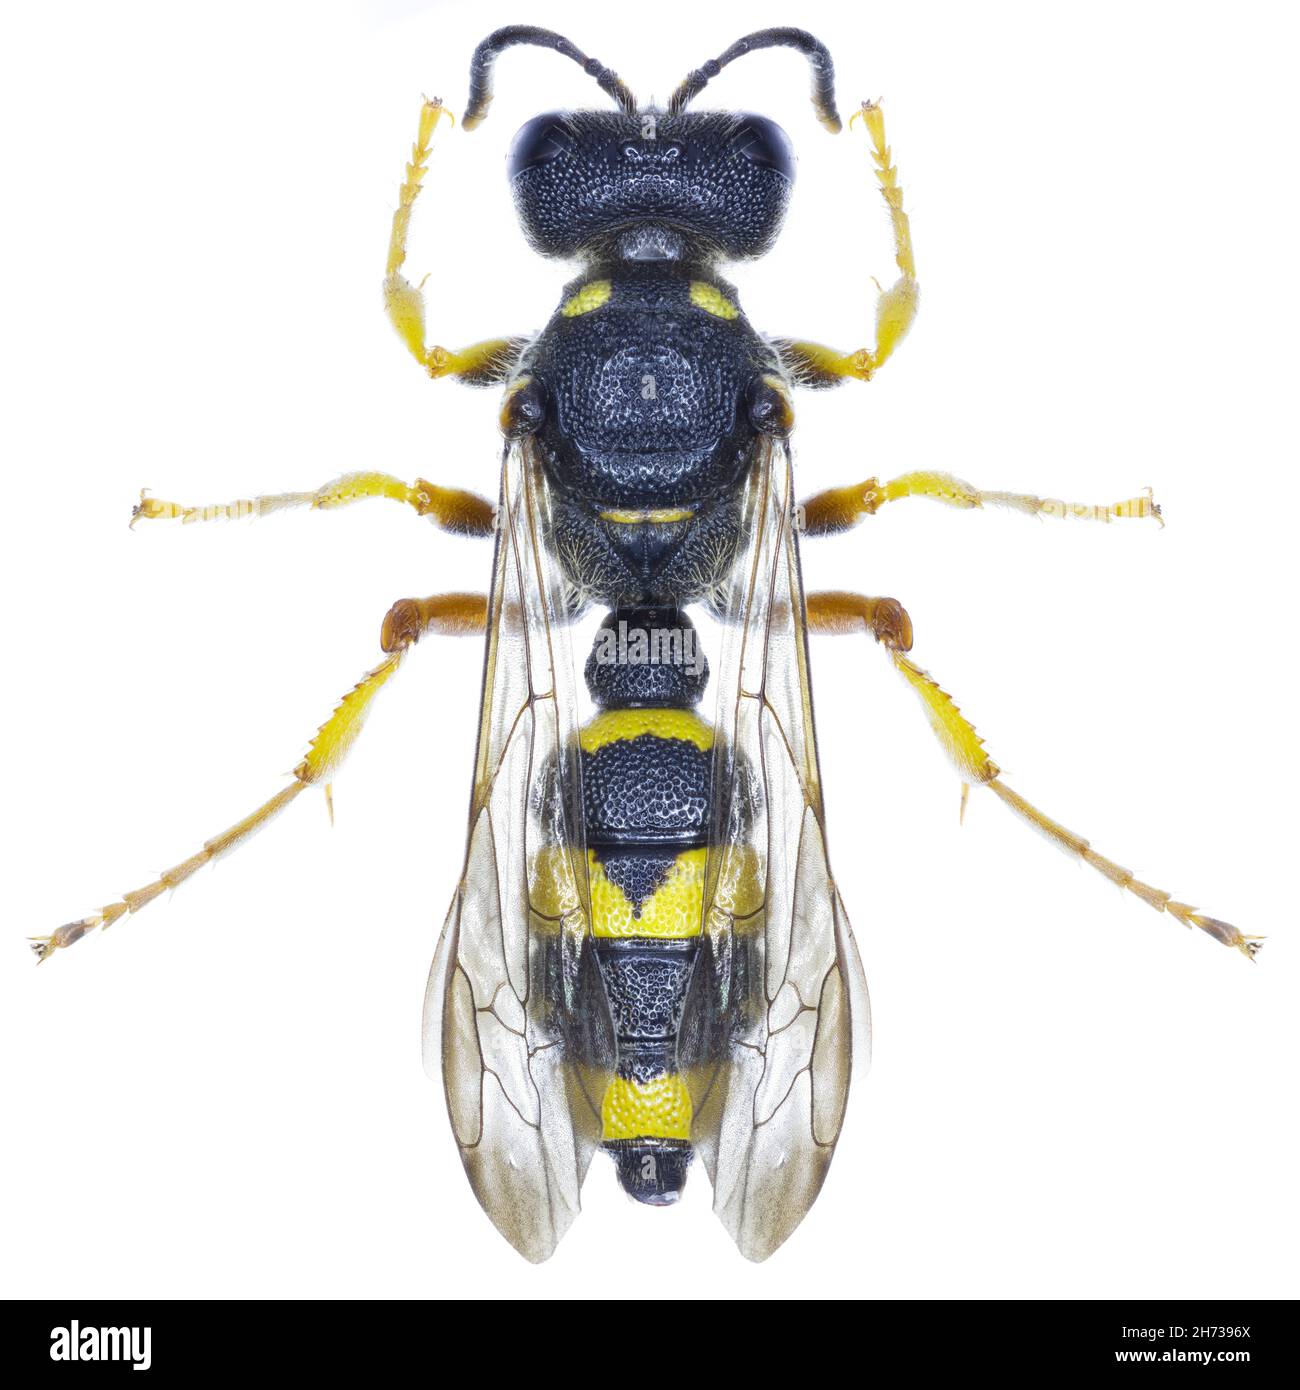 Cerceris rybyensis wasp specimen Stock Photo